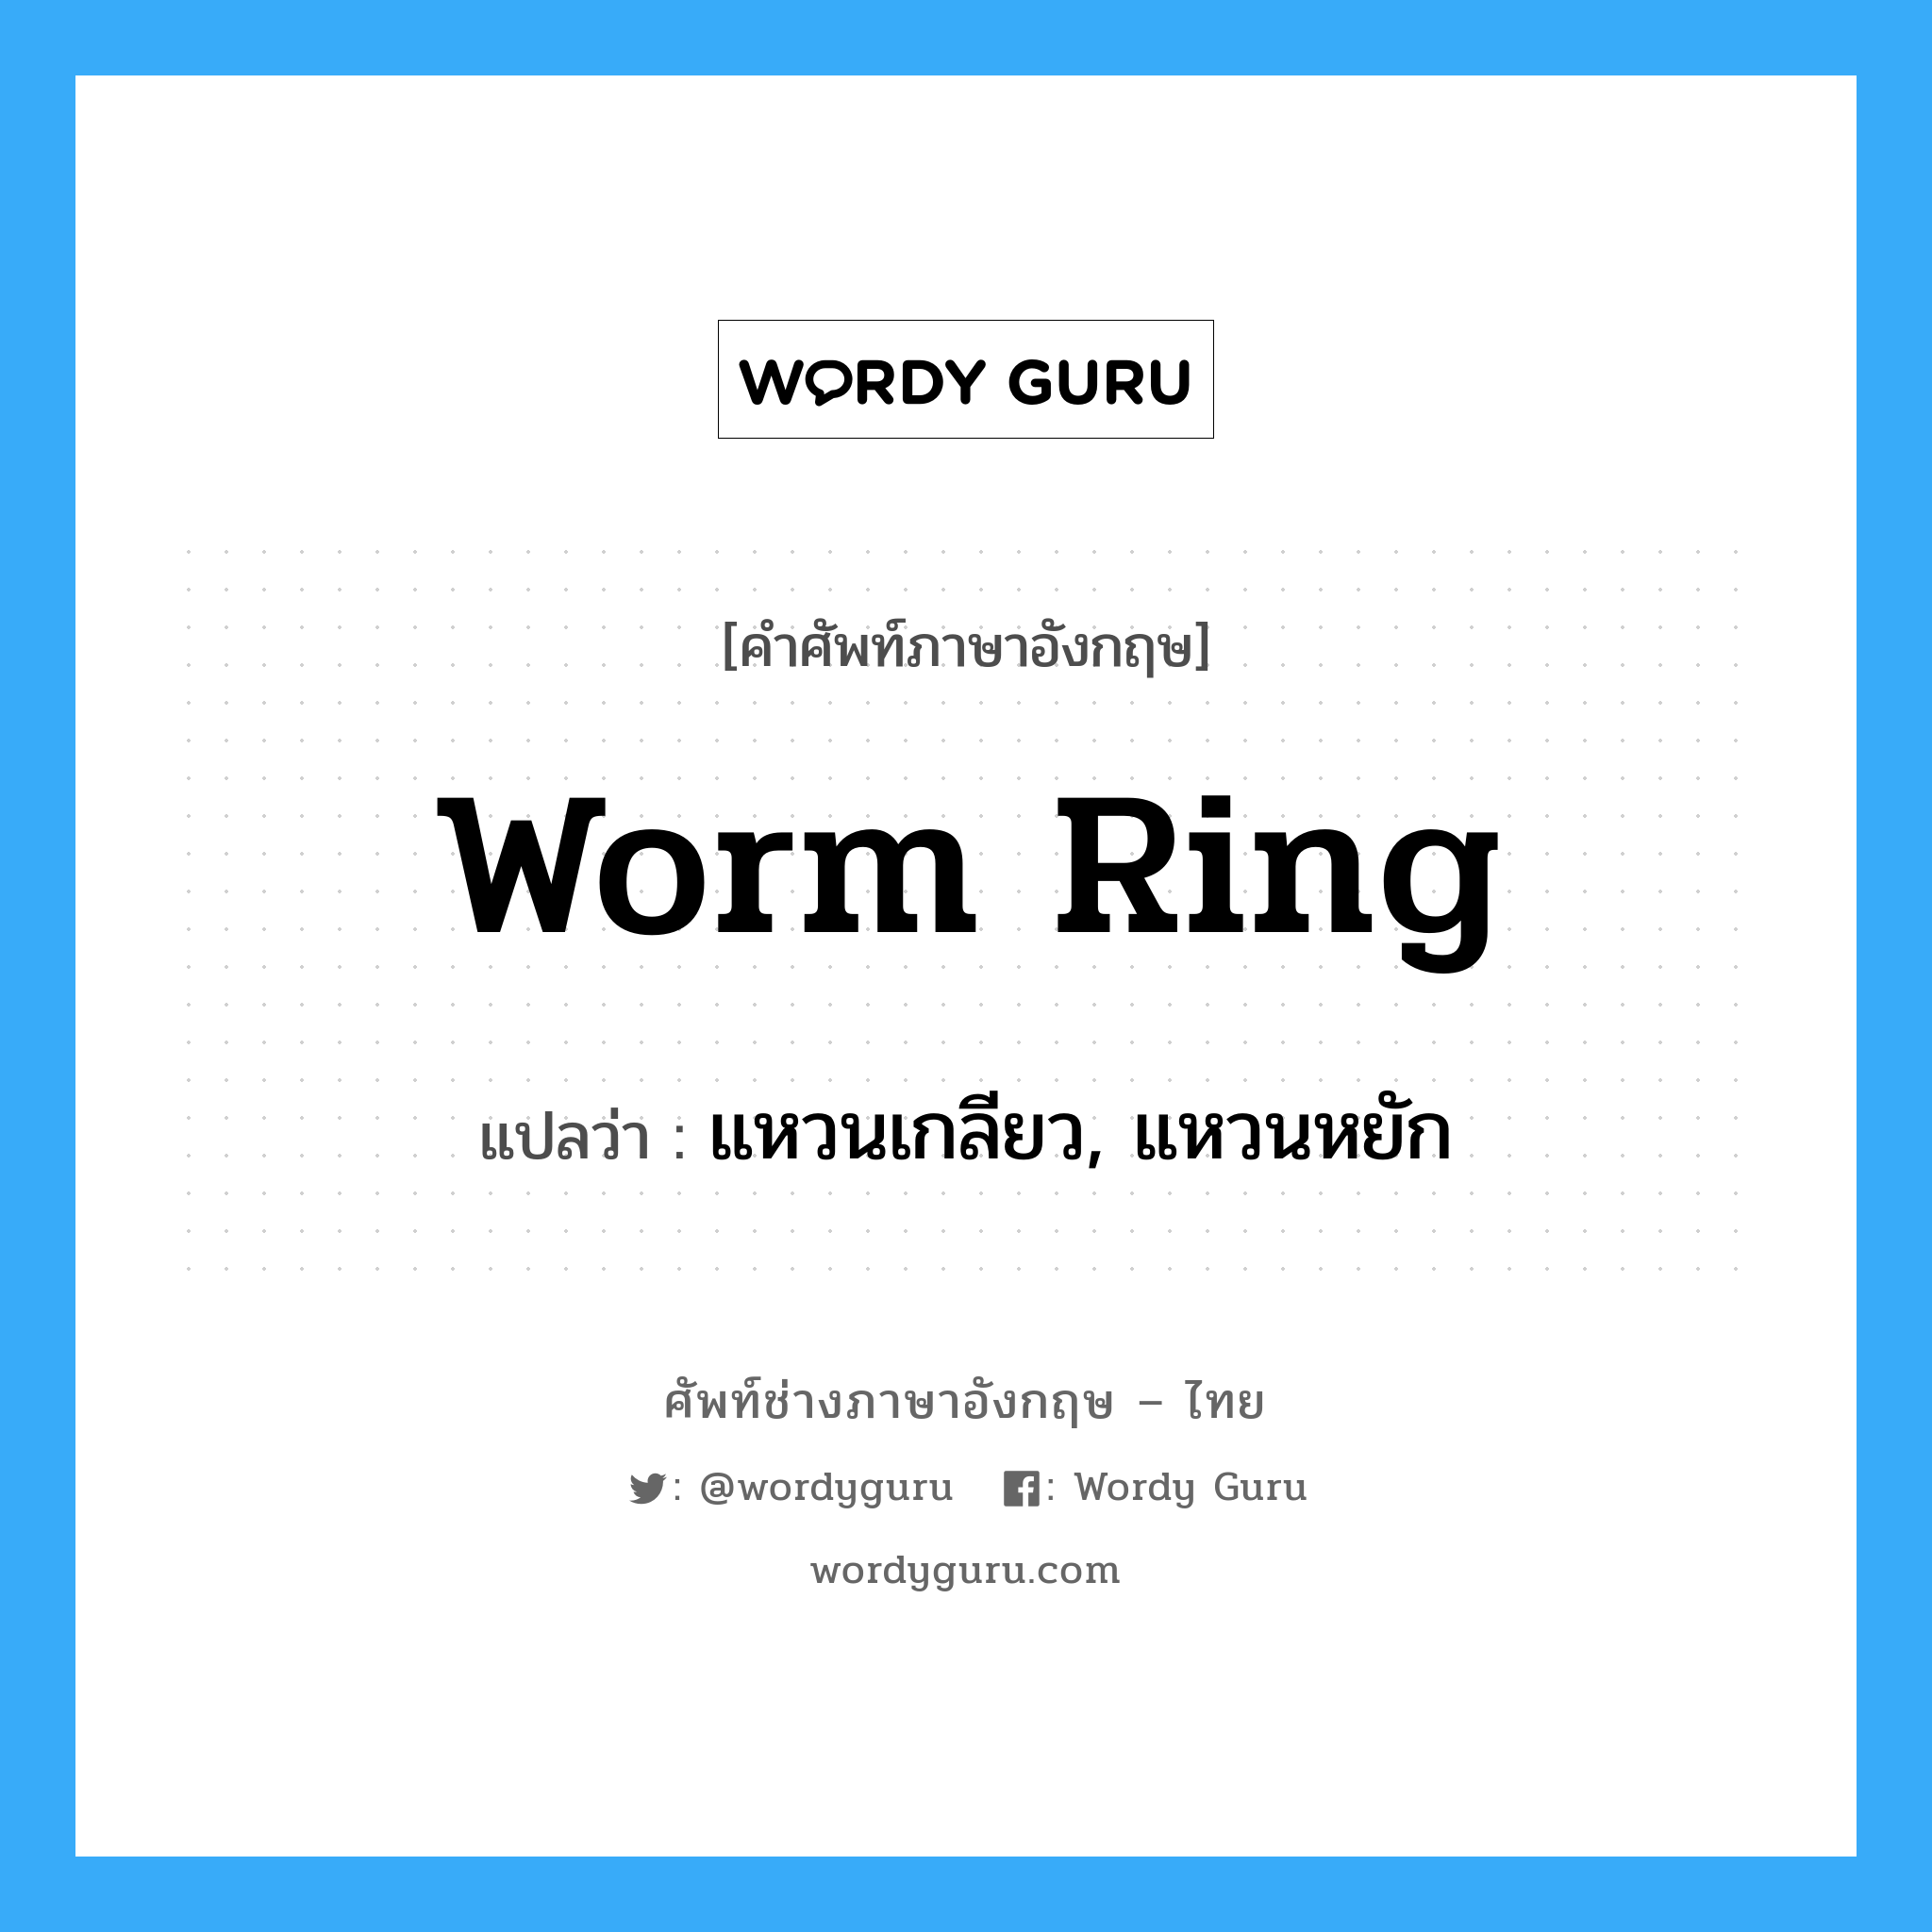 แหวนเกลียว, แหวนหยัก ภาษาอังกฤษ?, คำศัพท์ช่างภาษาอังกฤษ - ไทย แหวนเกลียว, แหวนหยัก คำศัพท์ภาษาอังกฤษ แหวนเกลียว, แหวนหยัก แปลว่า worm ring